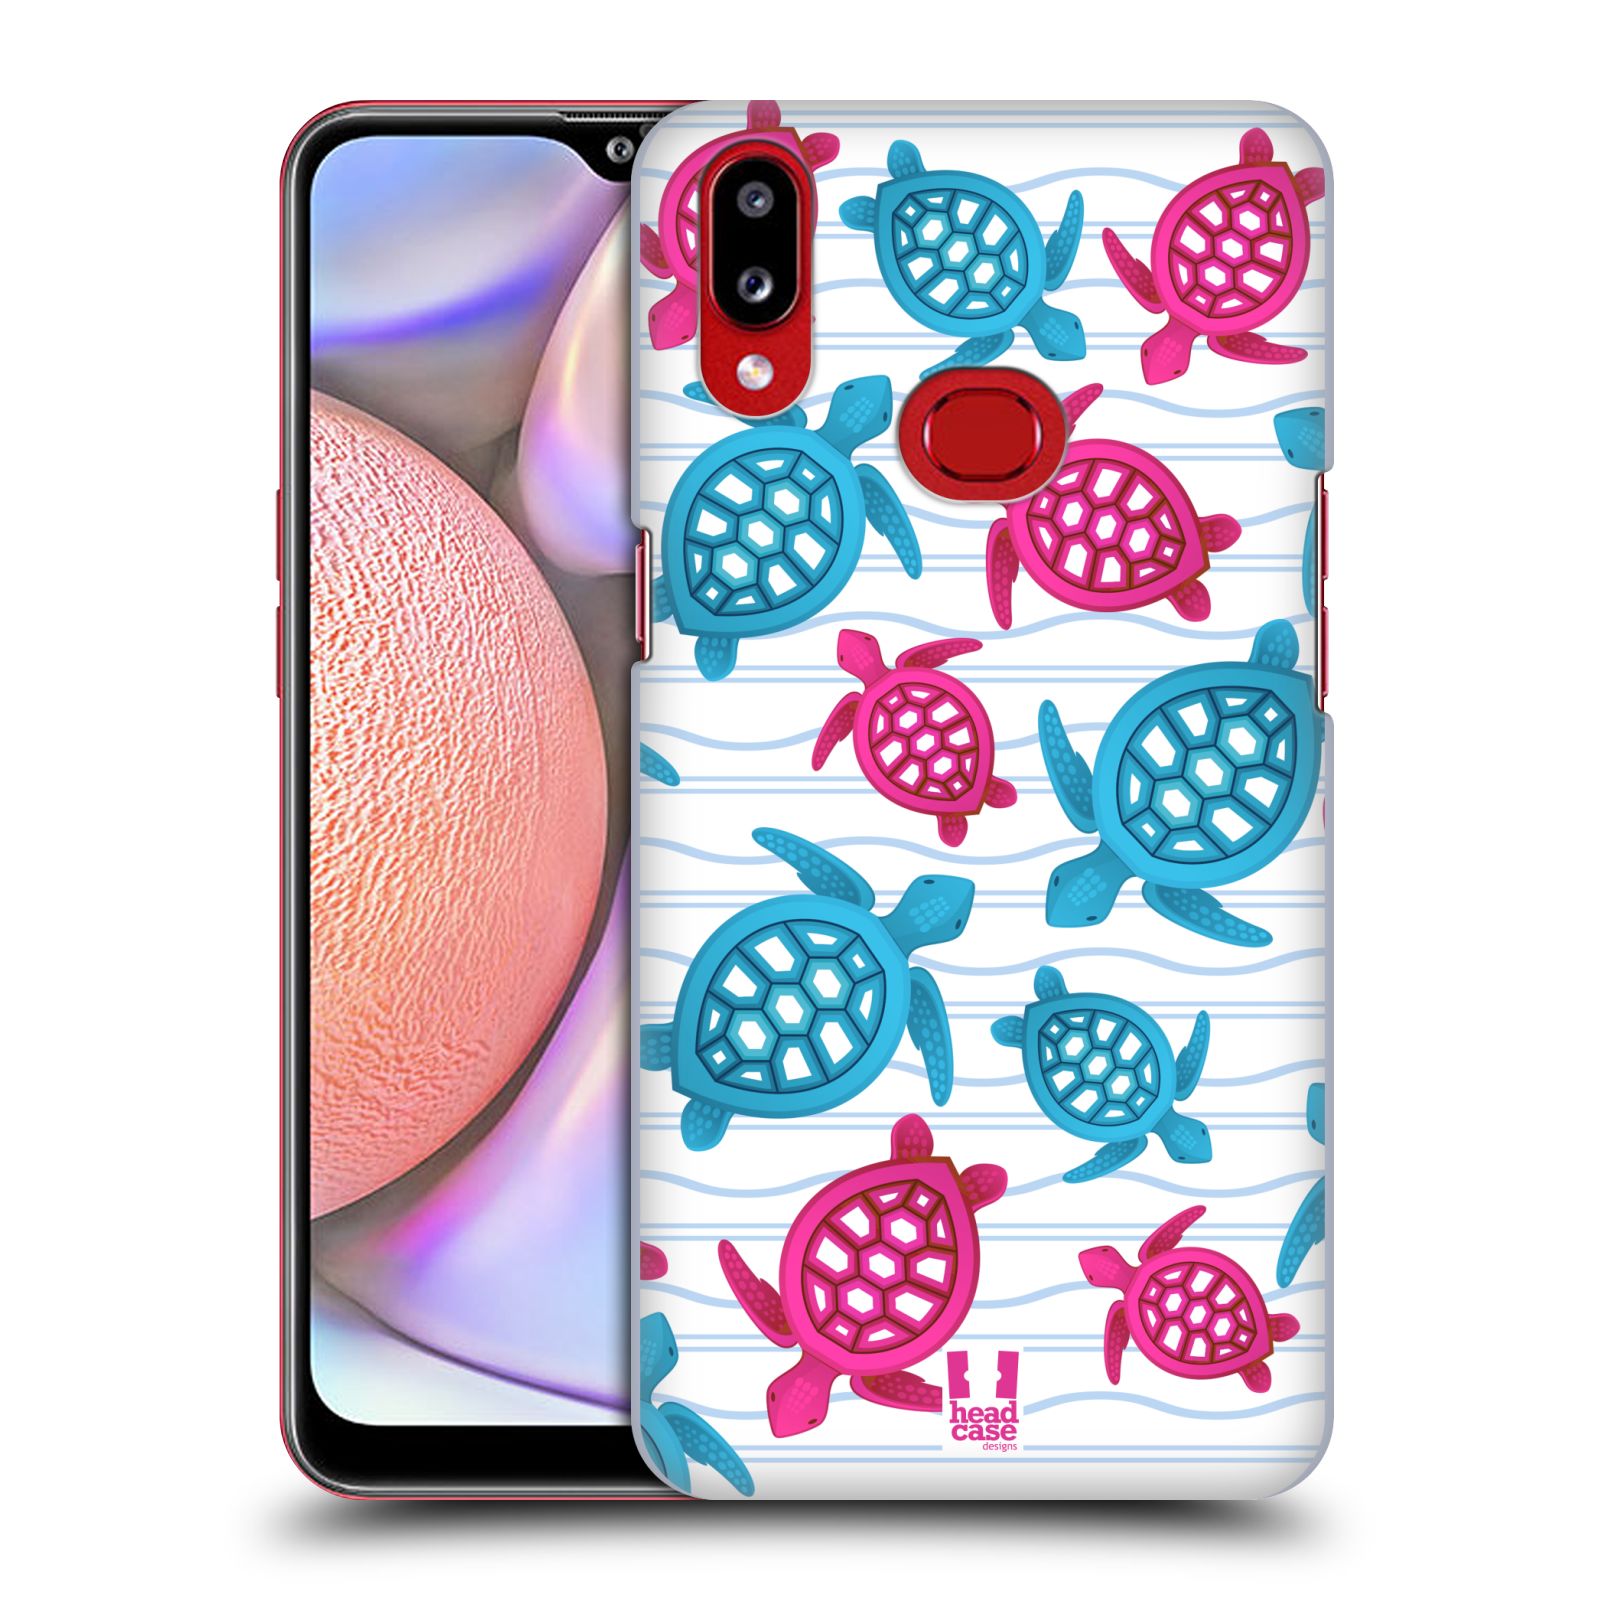 Zadní obal pro mobil Samsung Galaxy A10s - HEAD CASE - kreslený mořský vzor želvičky